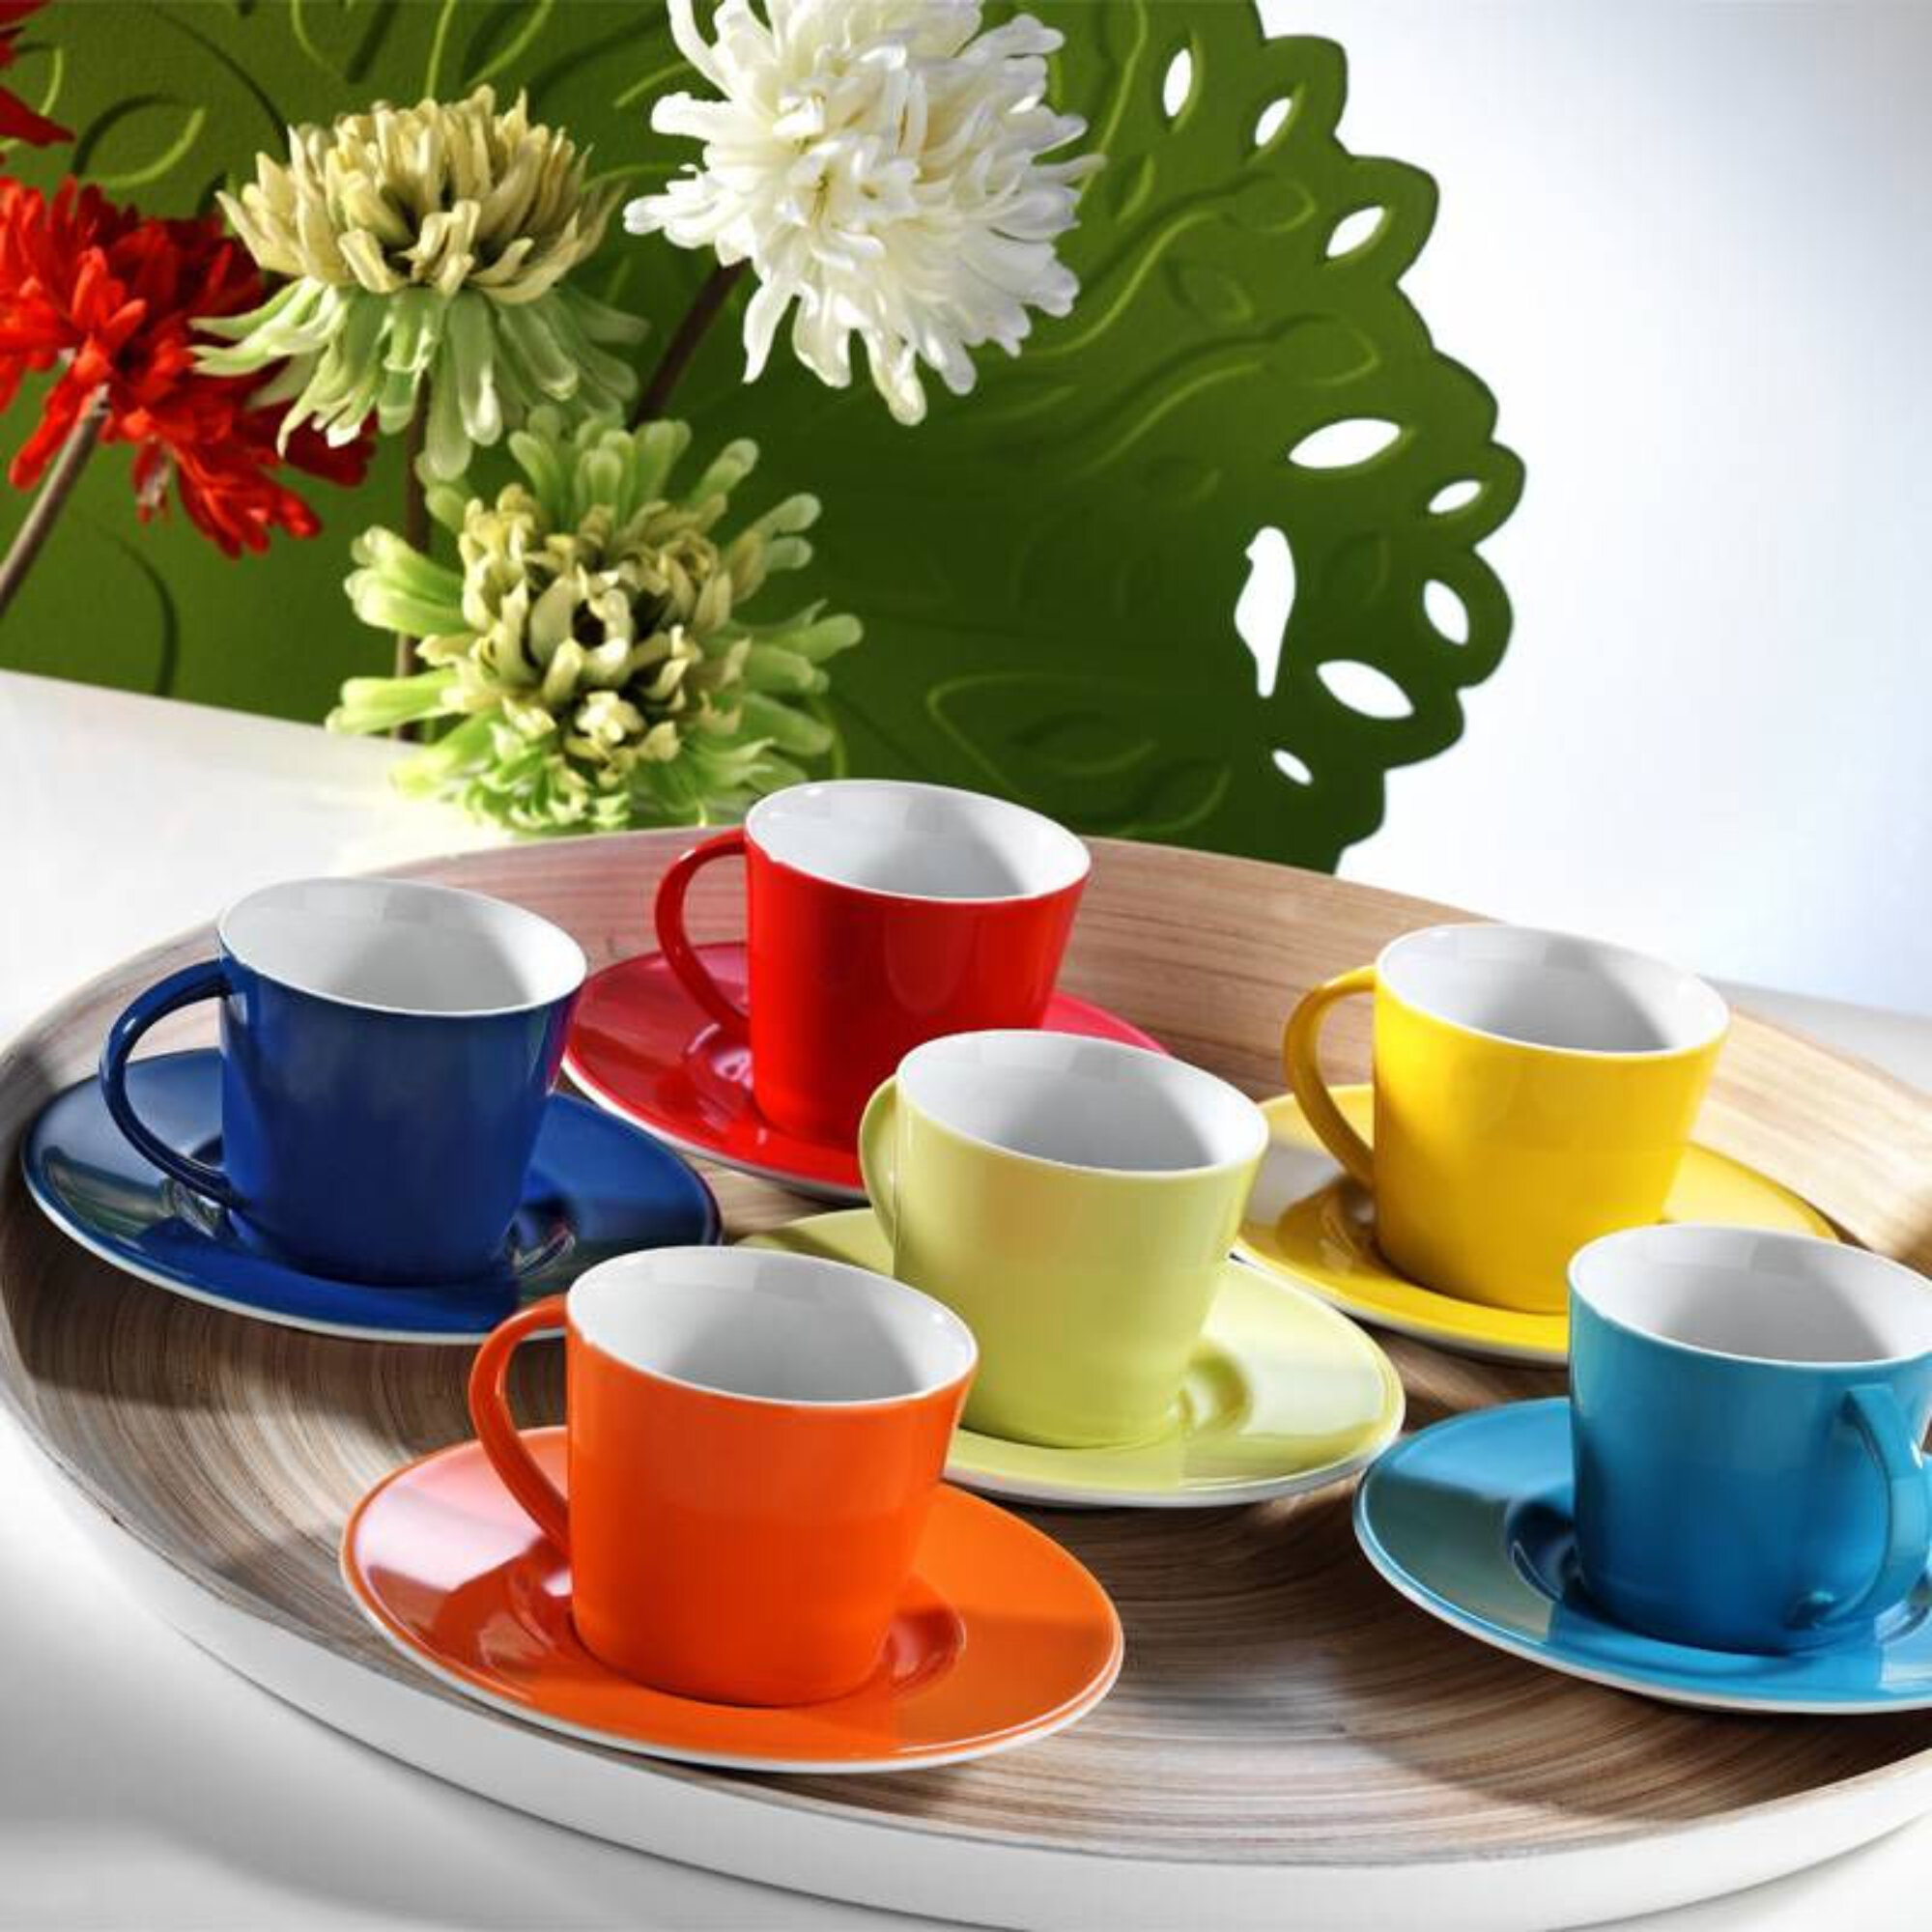 Tea Cup And Saucer Sets - Wayfair Canada